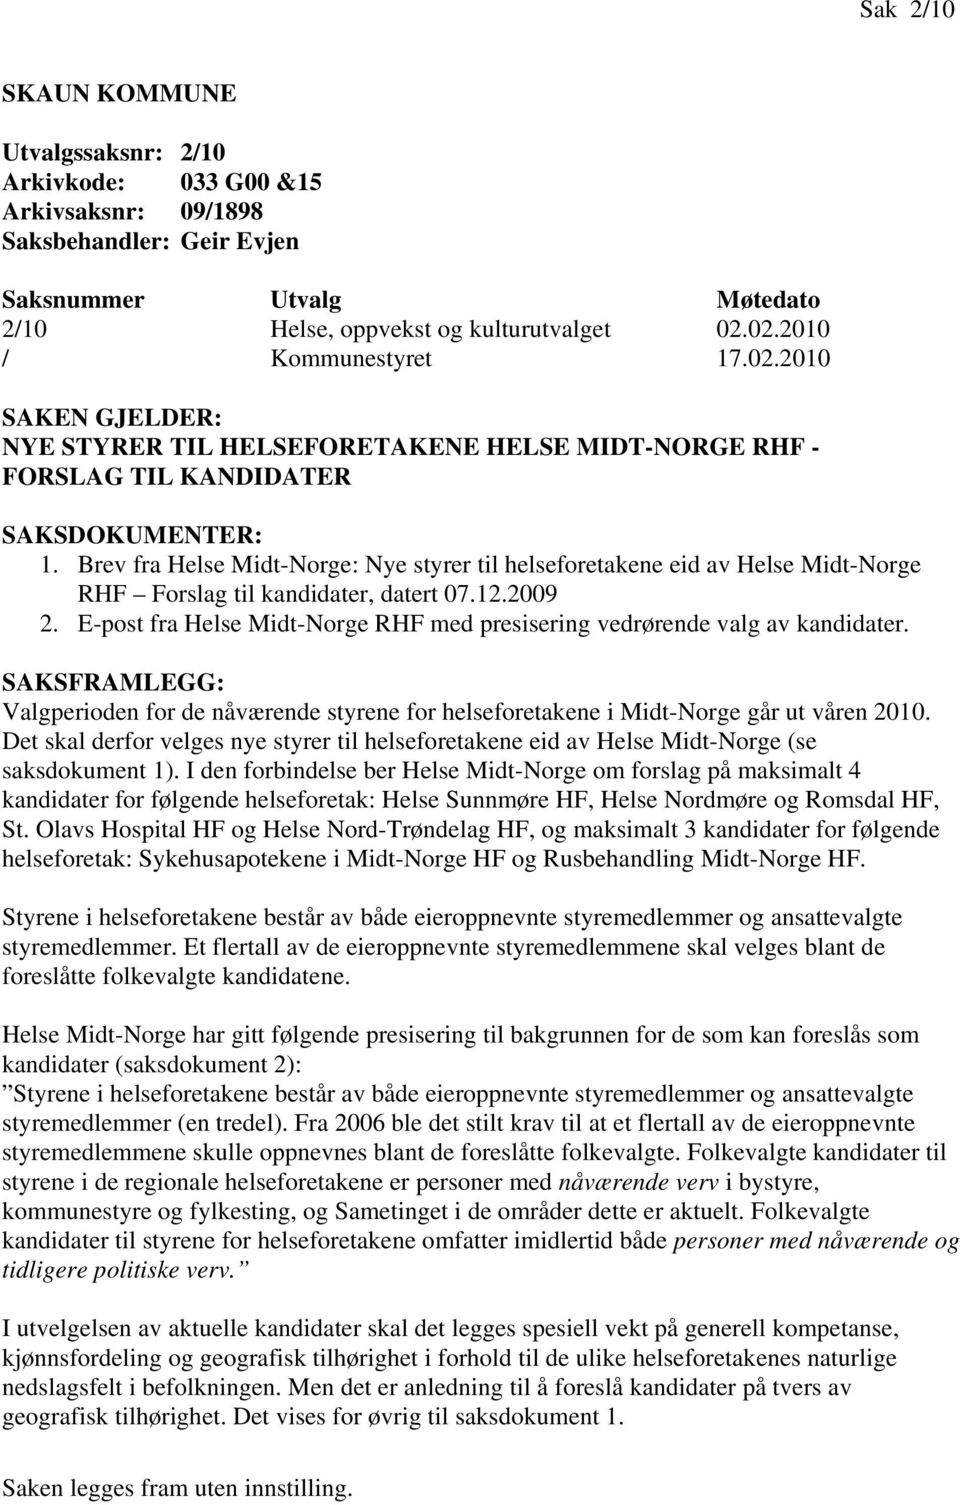 Brev fra Helse Midt-Norge: Nye styrer til helseforetakene eid av Helse Midt-Norge RHF Forslag til kandidater, datert 07.12.2009 2.